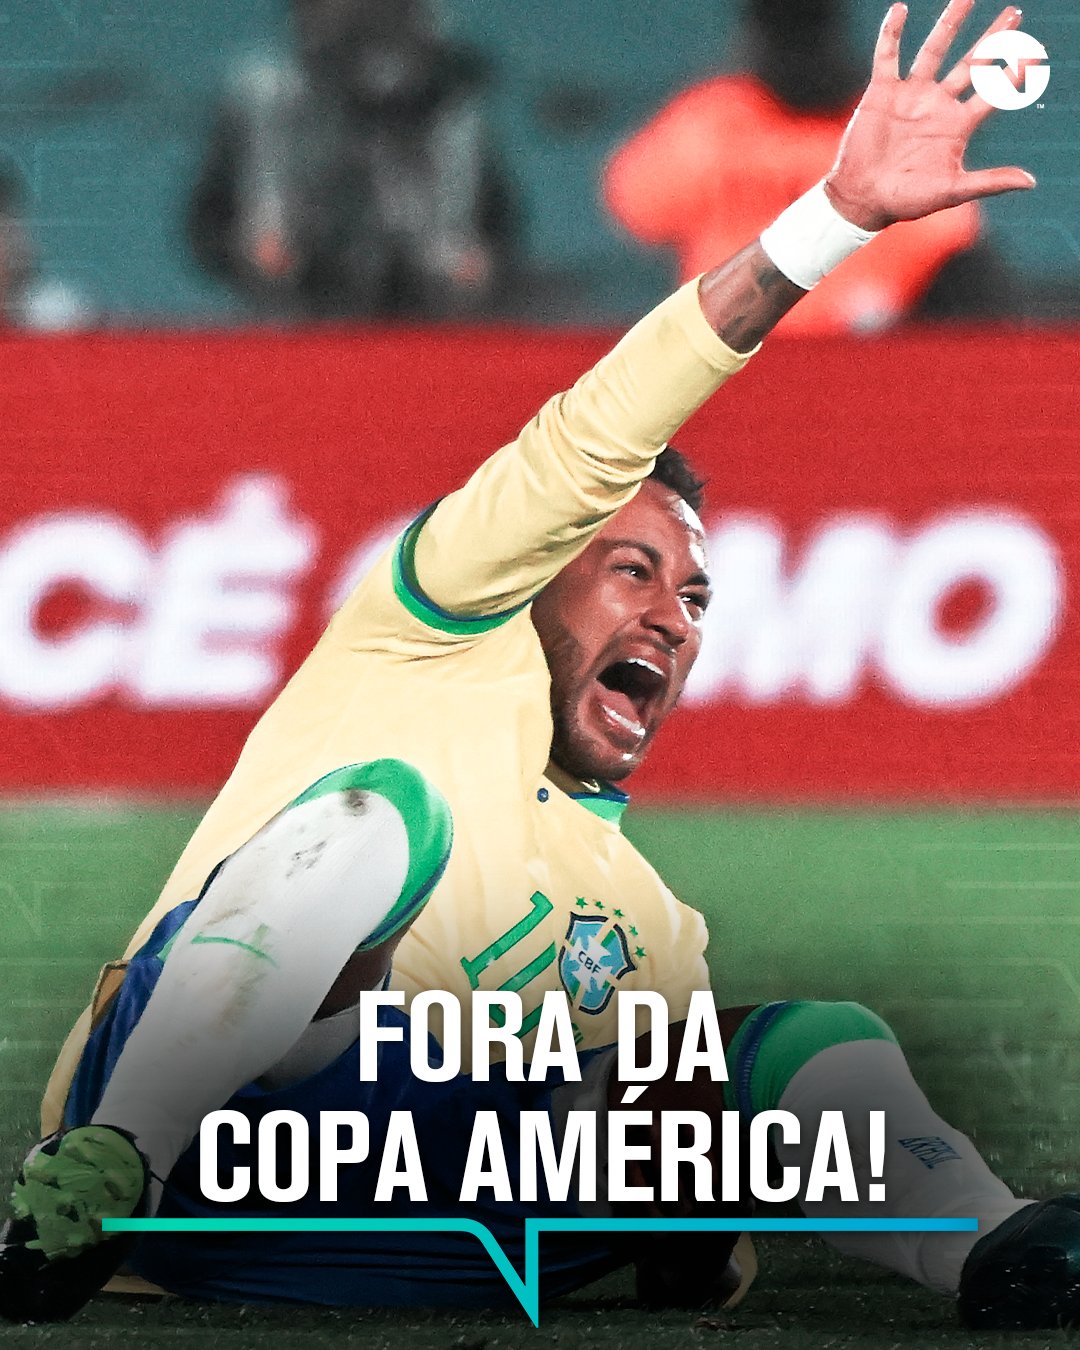 FALTA UM MÊS! Em poucos dias, a UEFA - TNT Sports Brasil